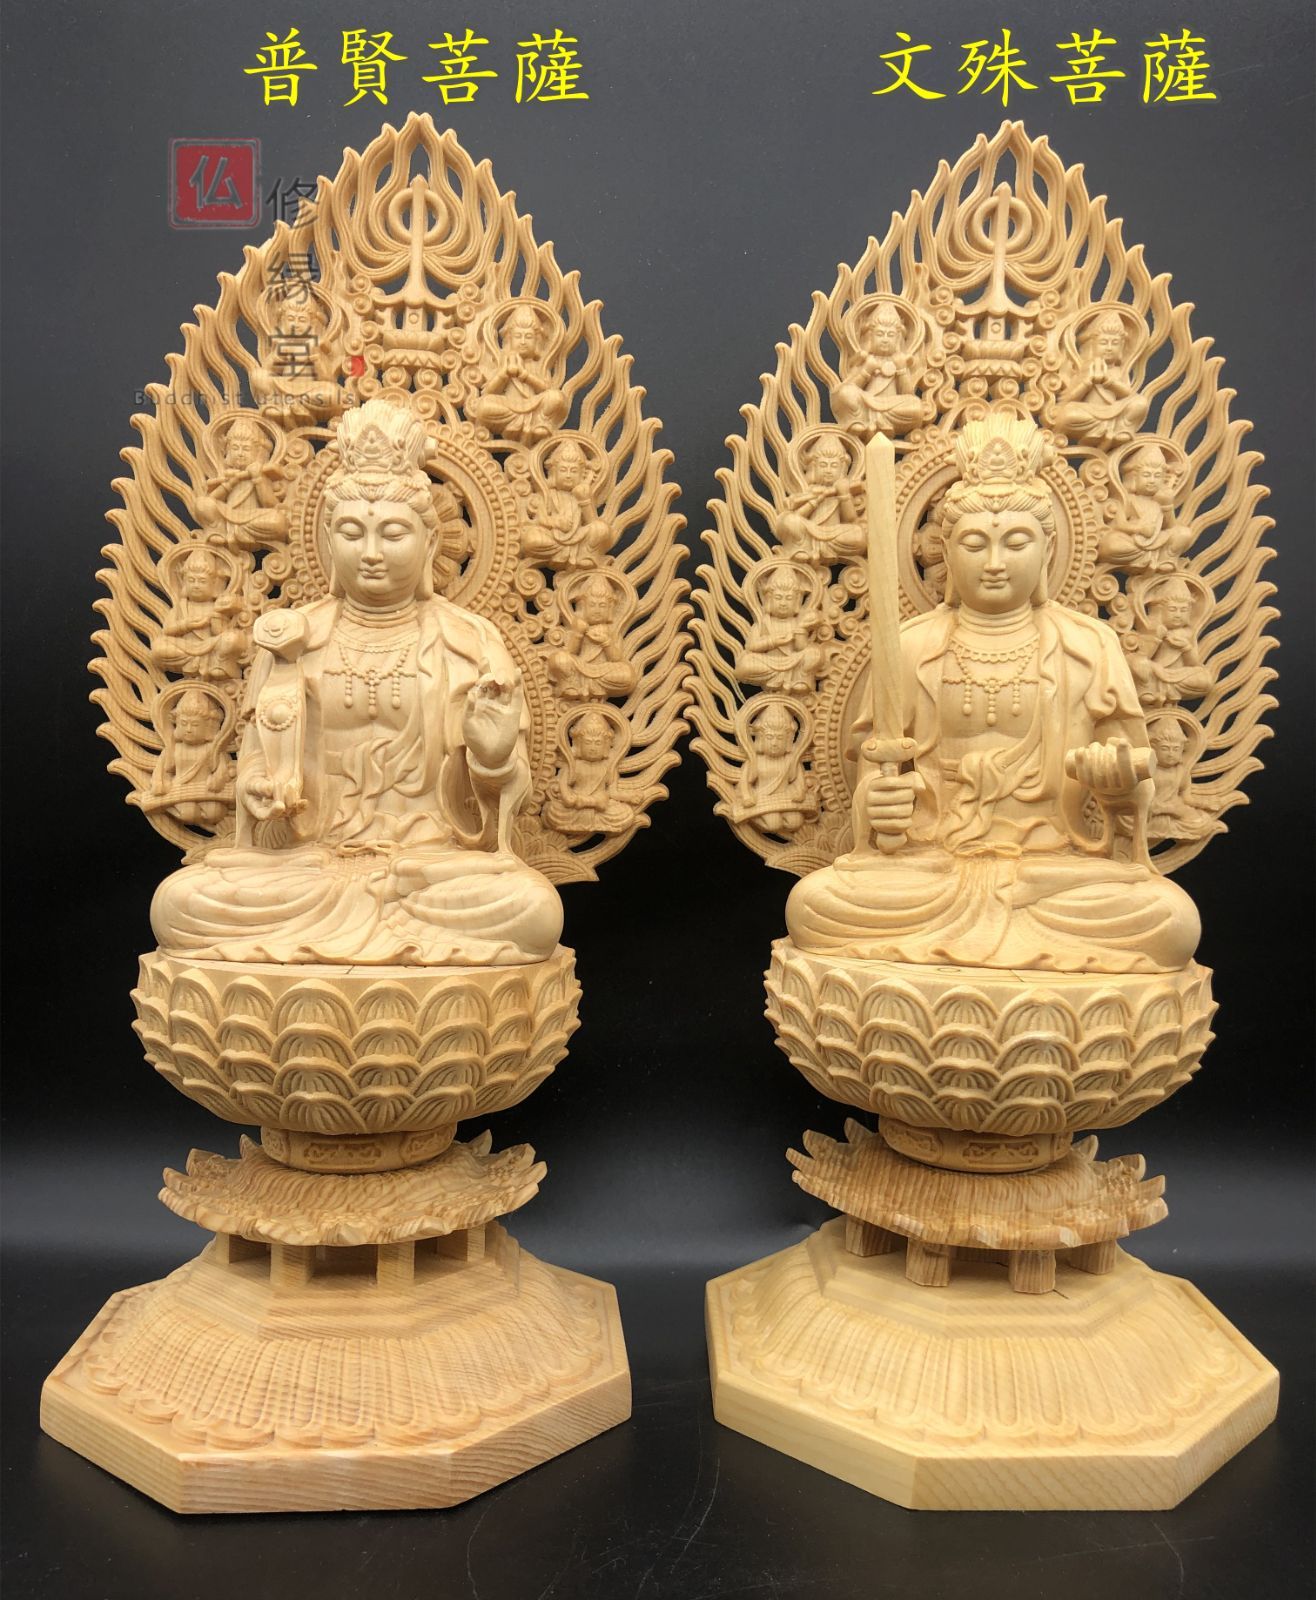 気質アップ 仏教工芸 仏像 【修縁堂】特上彫 彫刻 天然木檜材 木彫仏像 